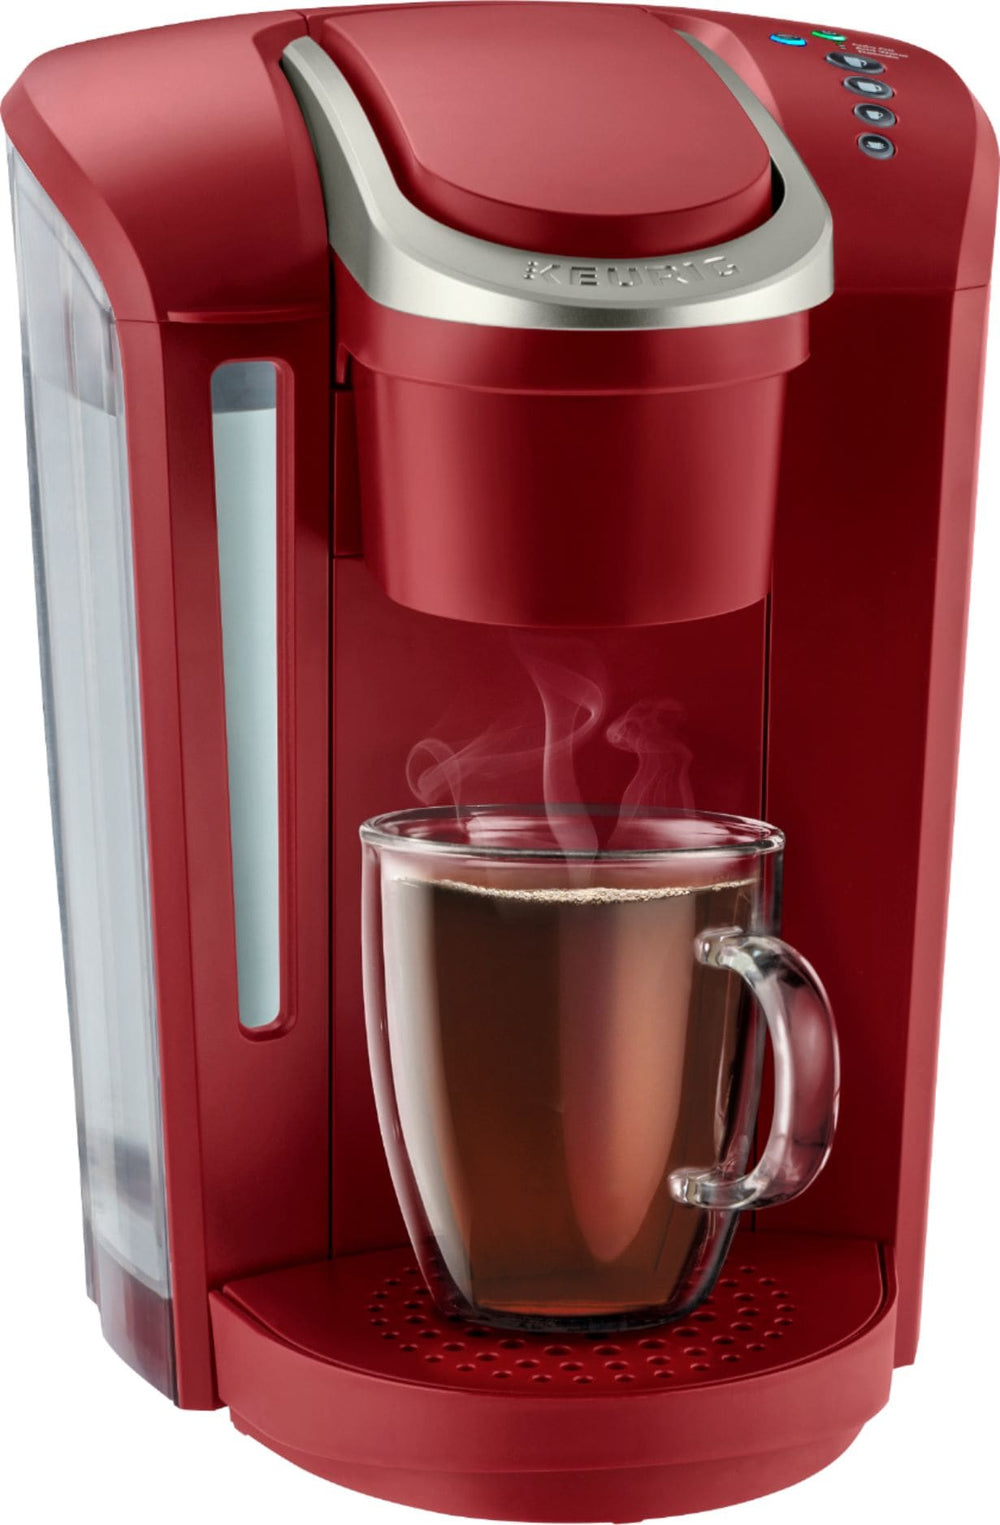 Keurig - K-Select Single-Serve K-Cup Pod Coffee Maker - Vintage Red_1